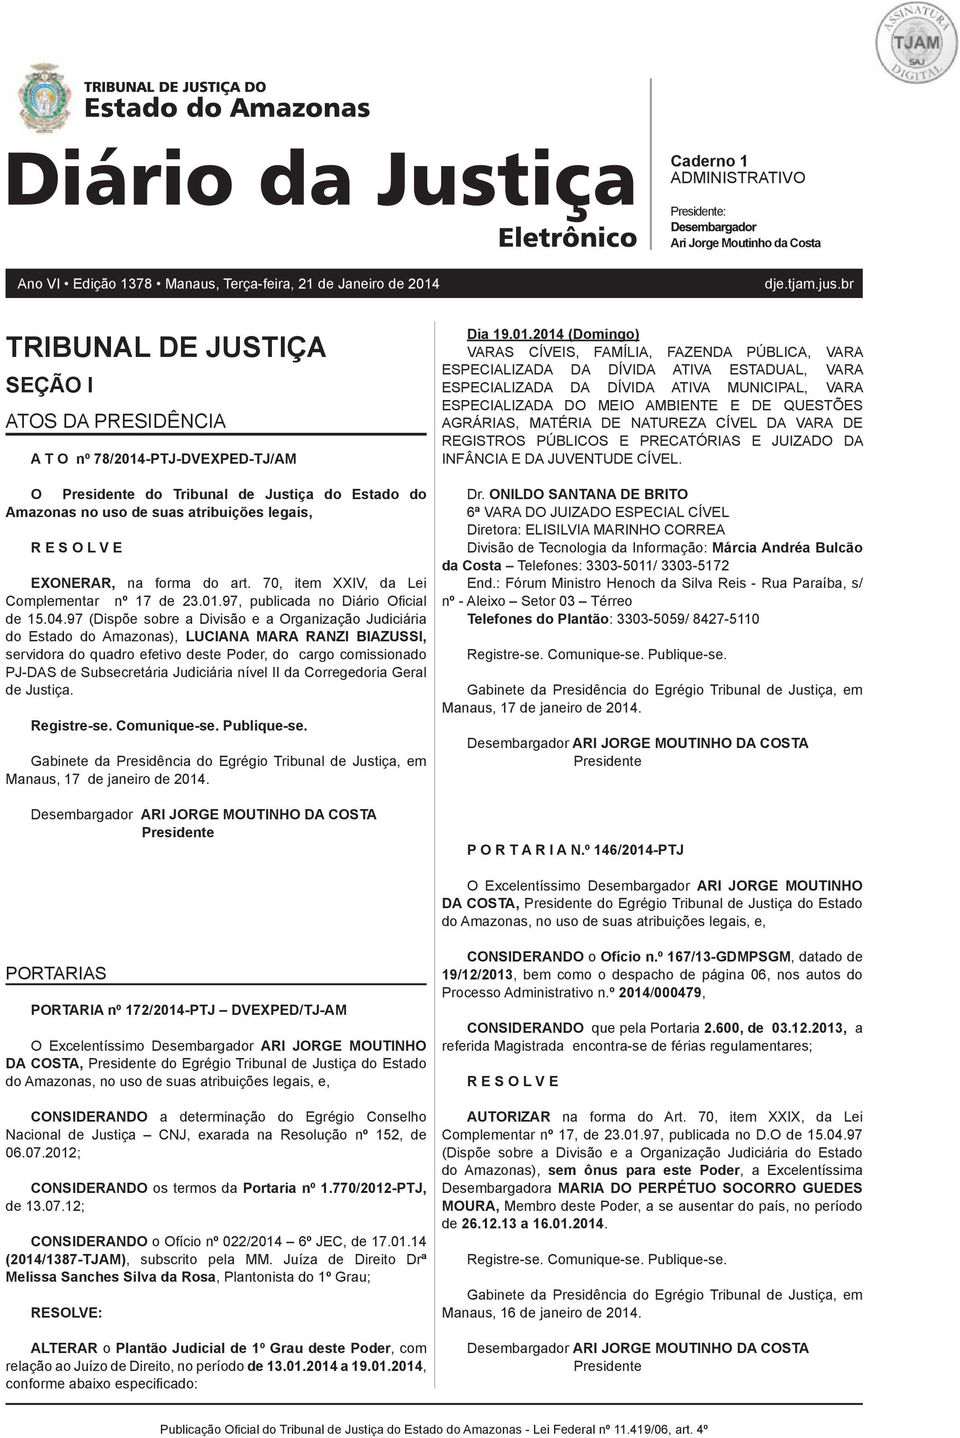 70, item XXIV, da Lei Complementar nº 17 de 23.01.97, publicada no Diário Ofi cial de 15.04.